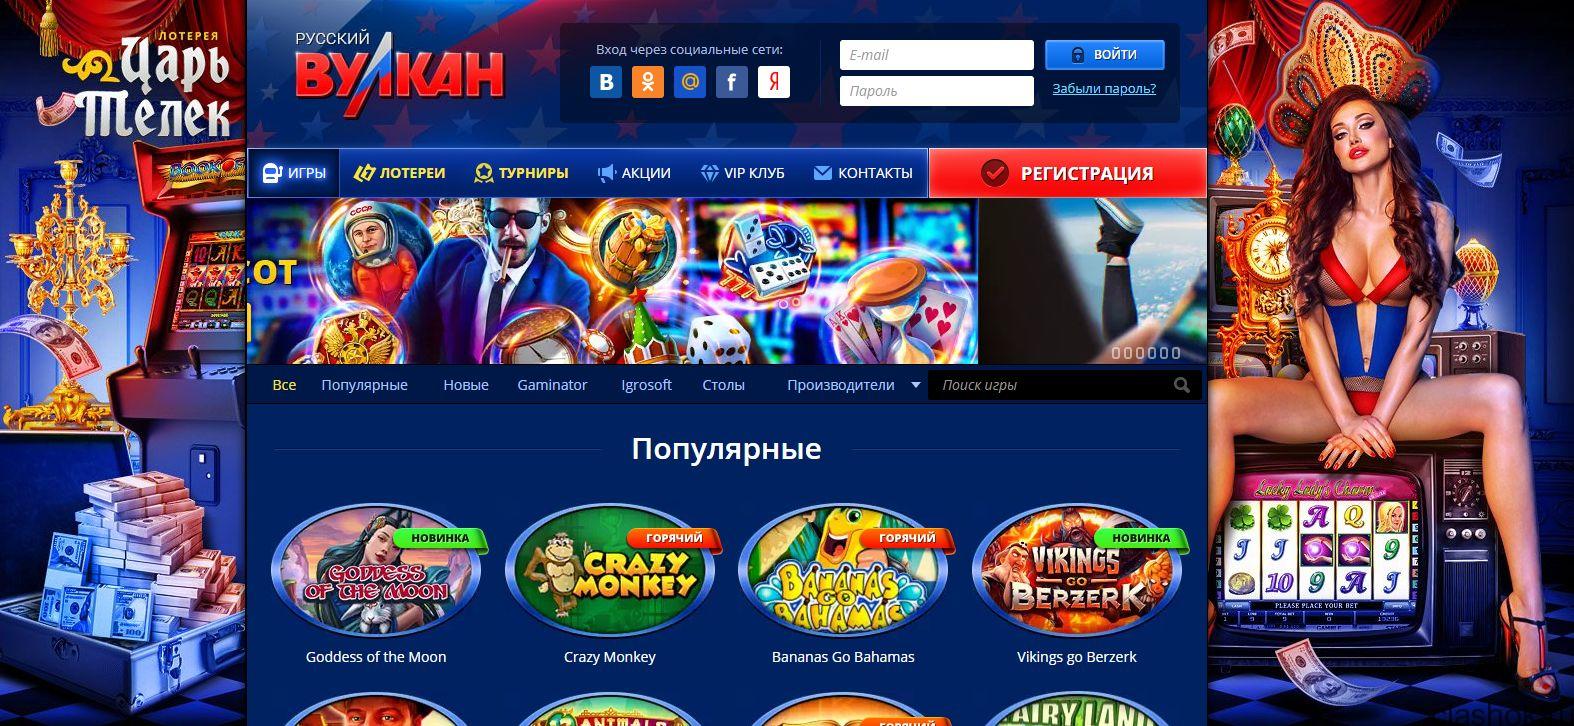 Официальный сайт казино Вулкан Россия